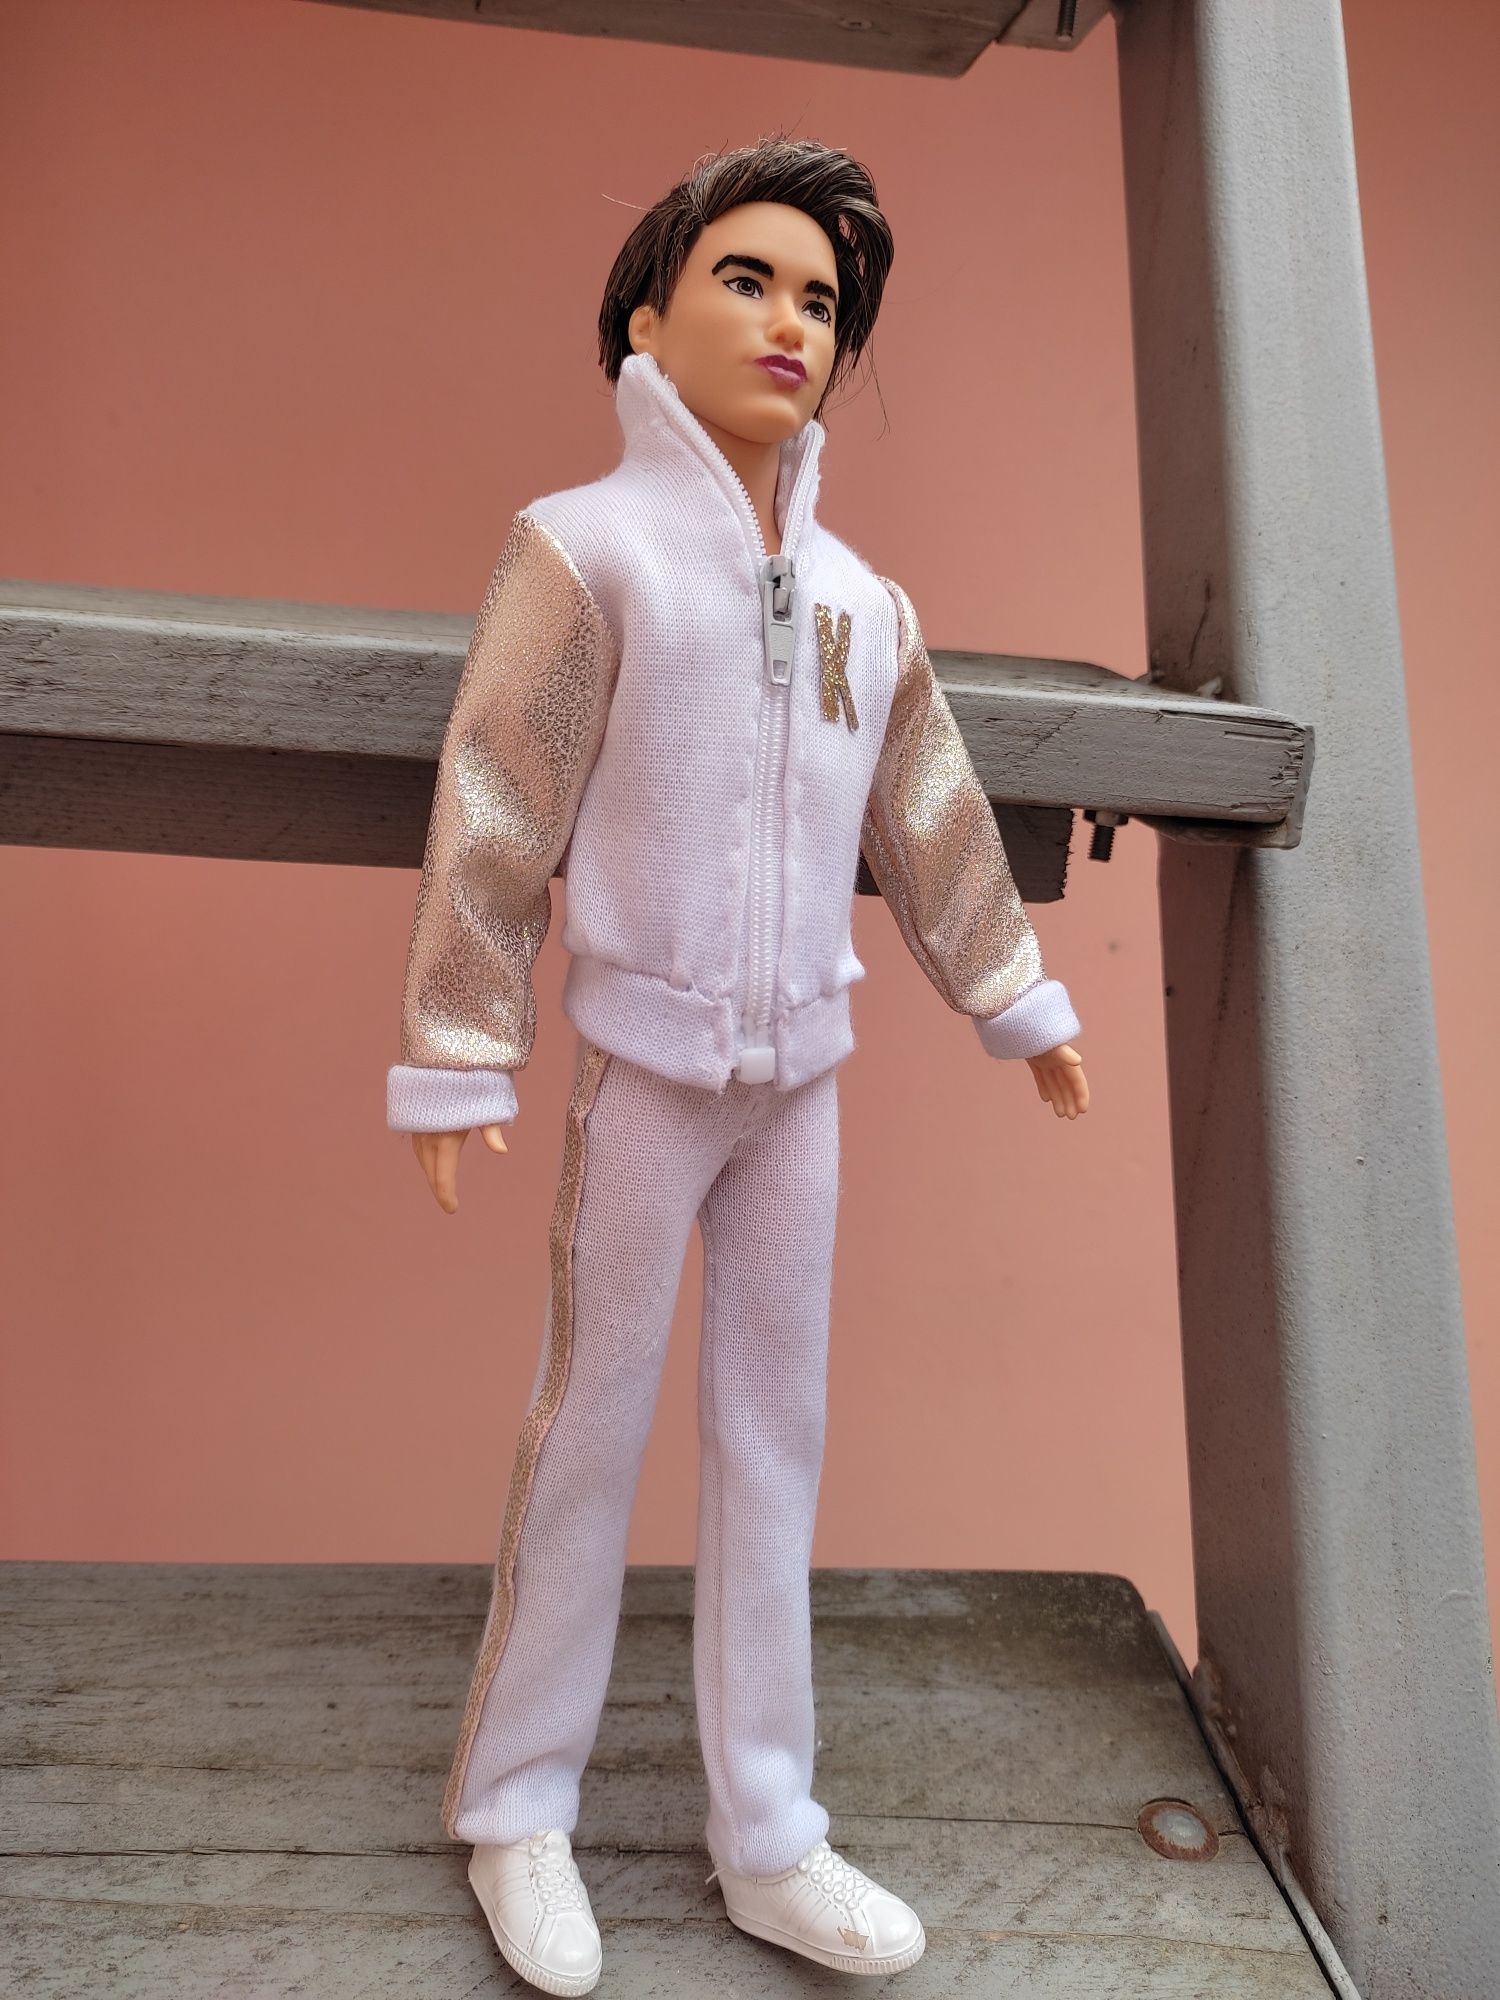 Ken din filmul Barbie